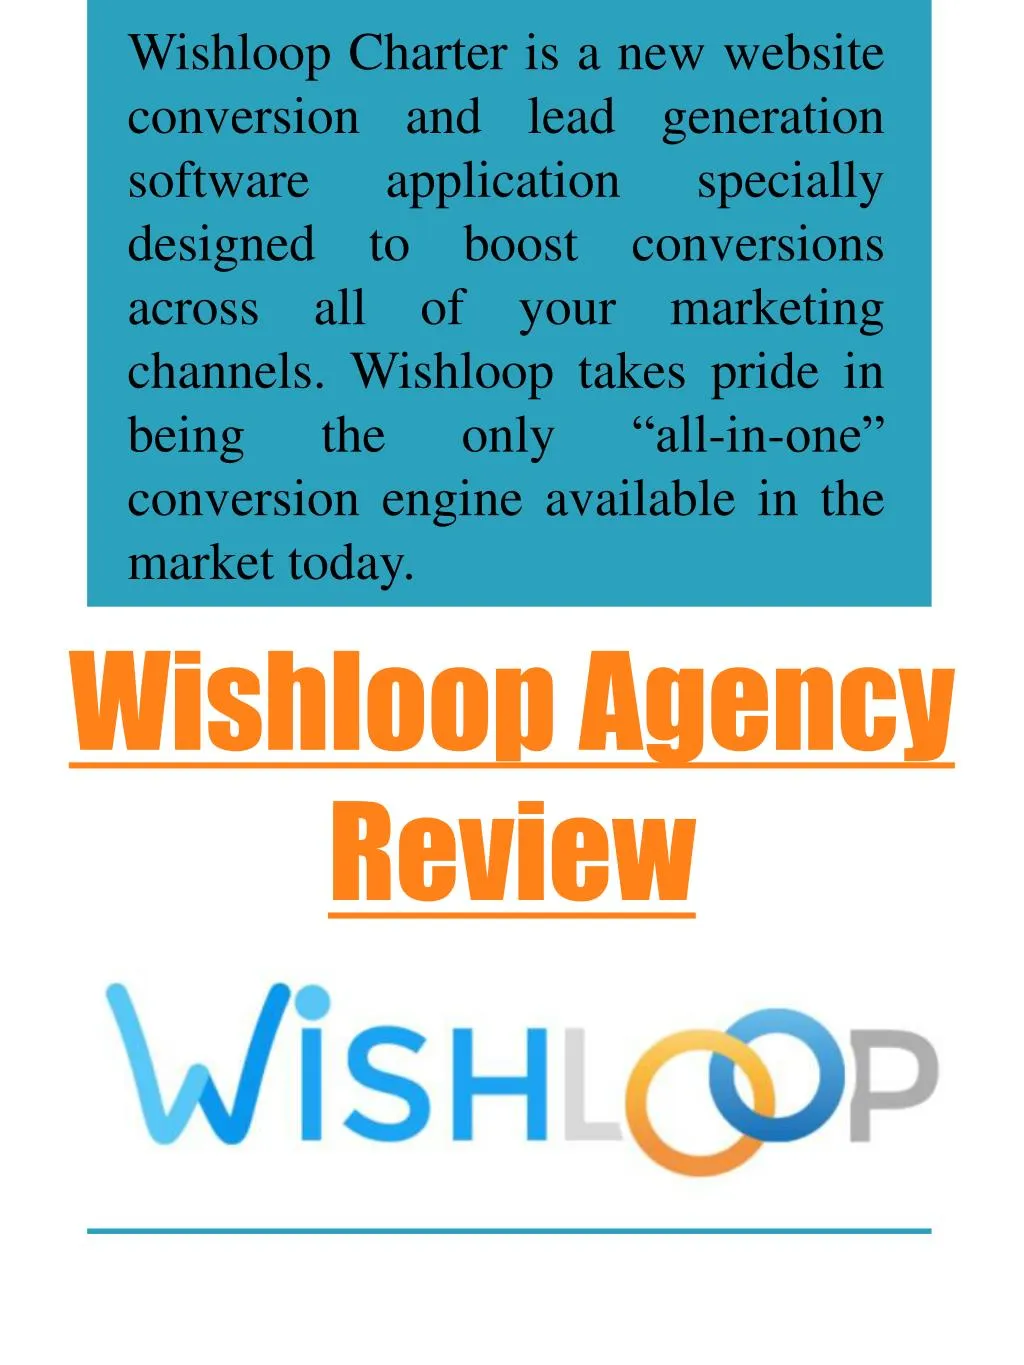 wishloop agency review